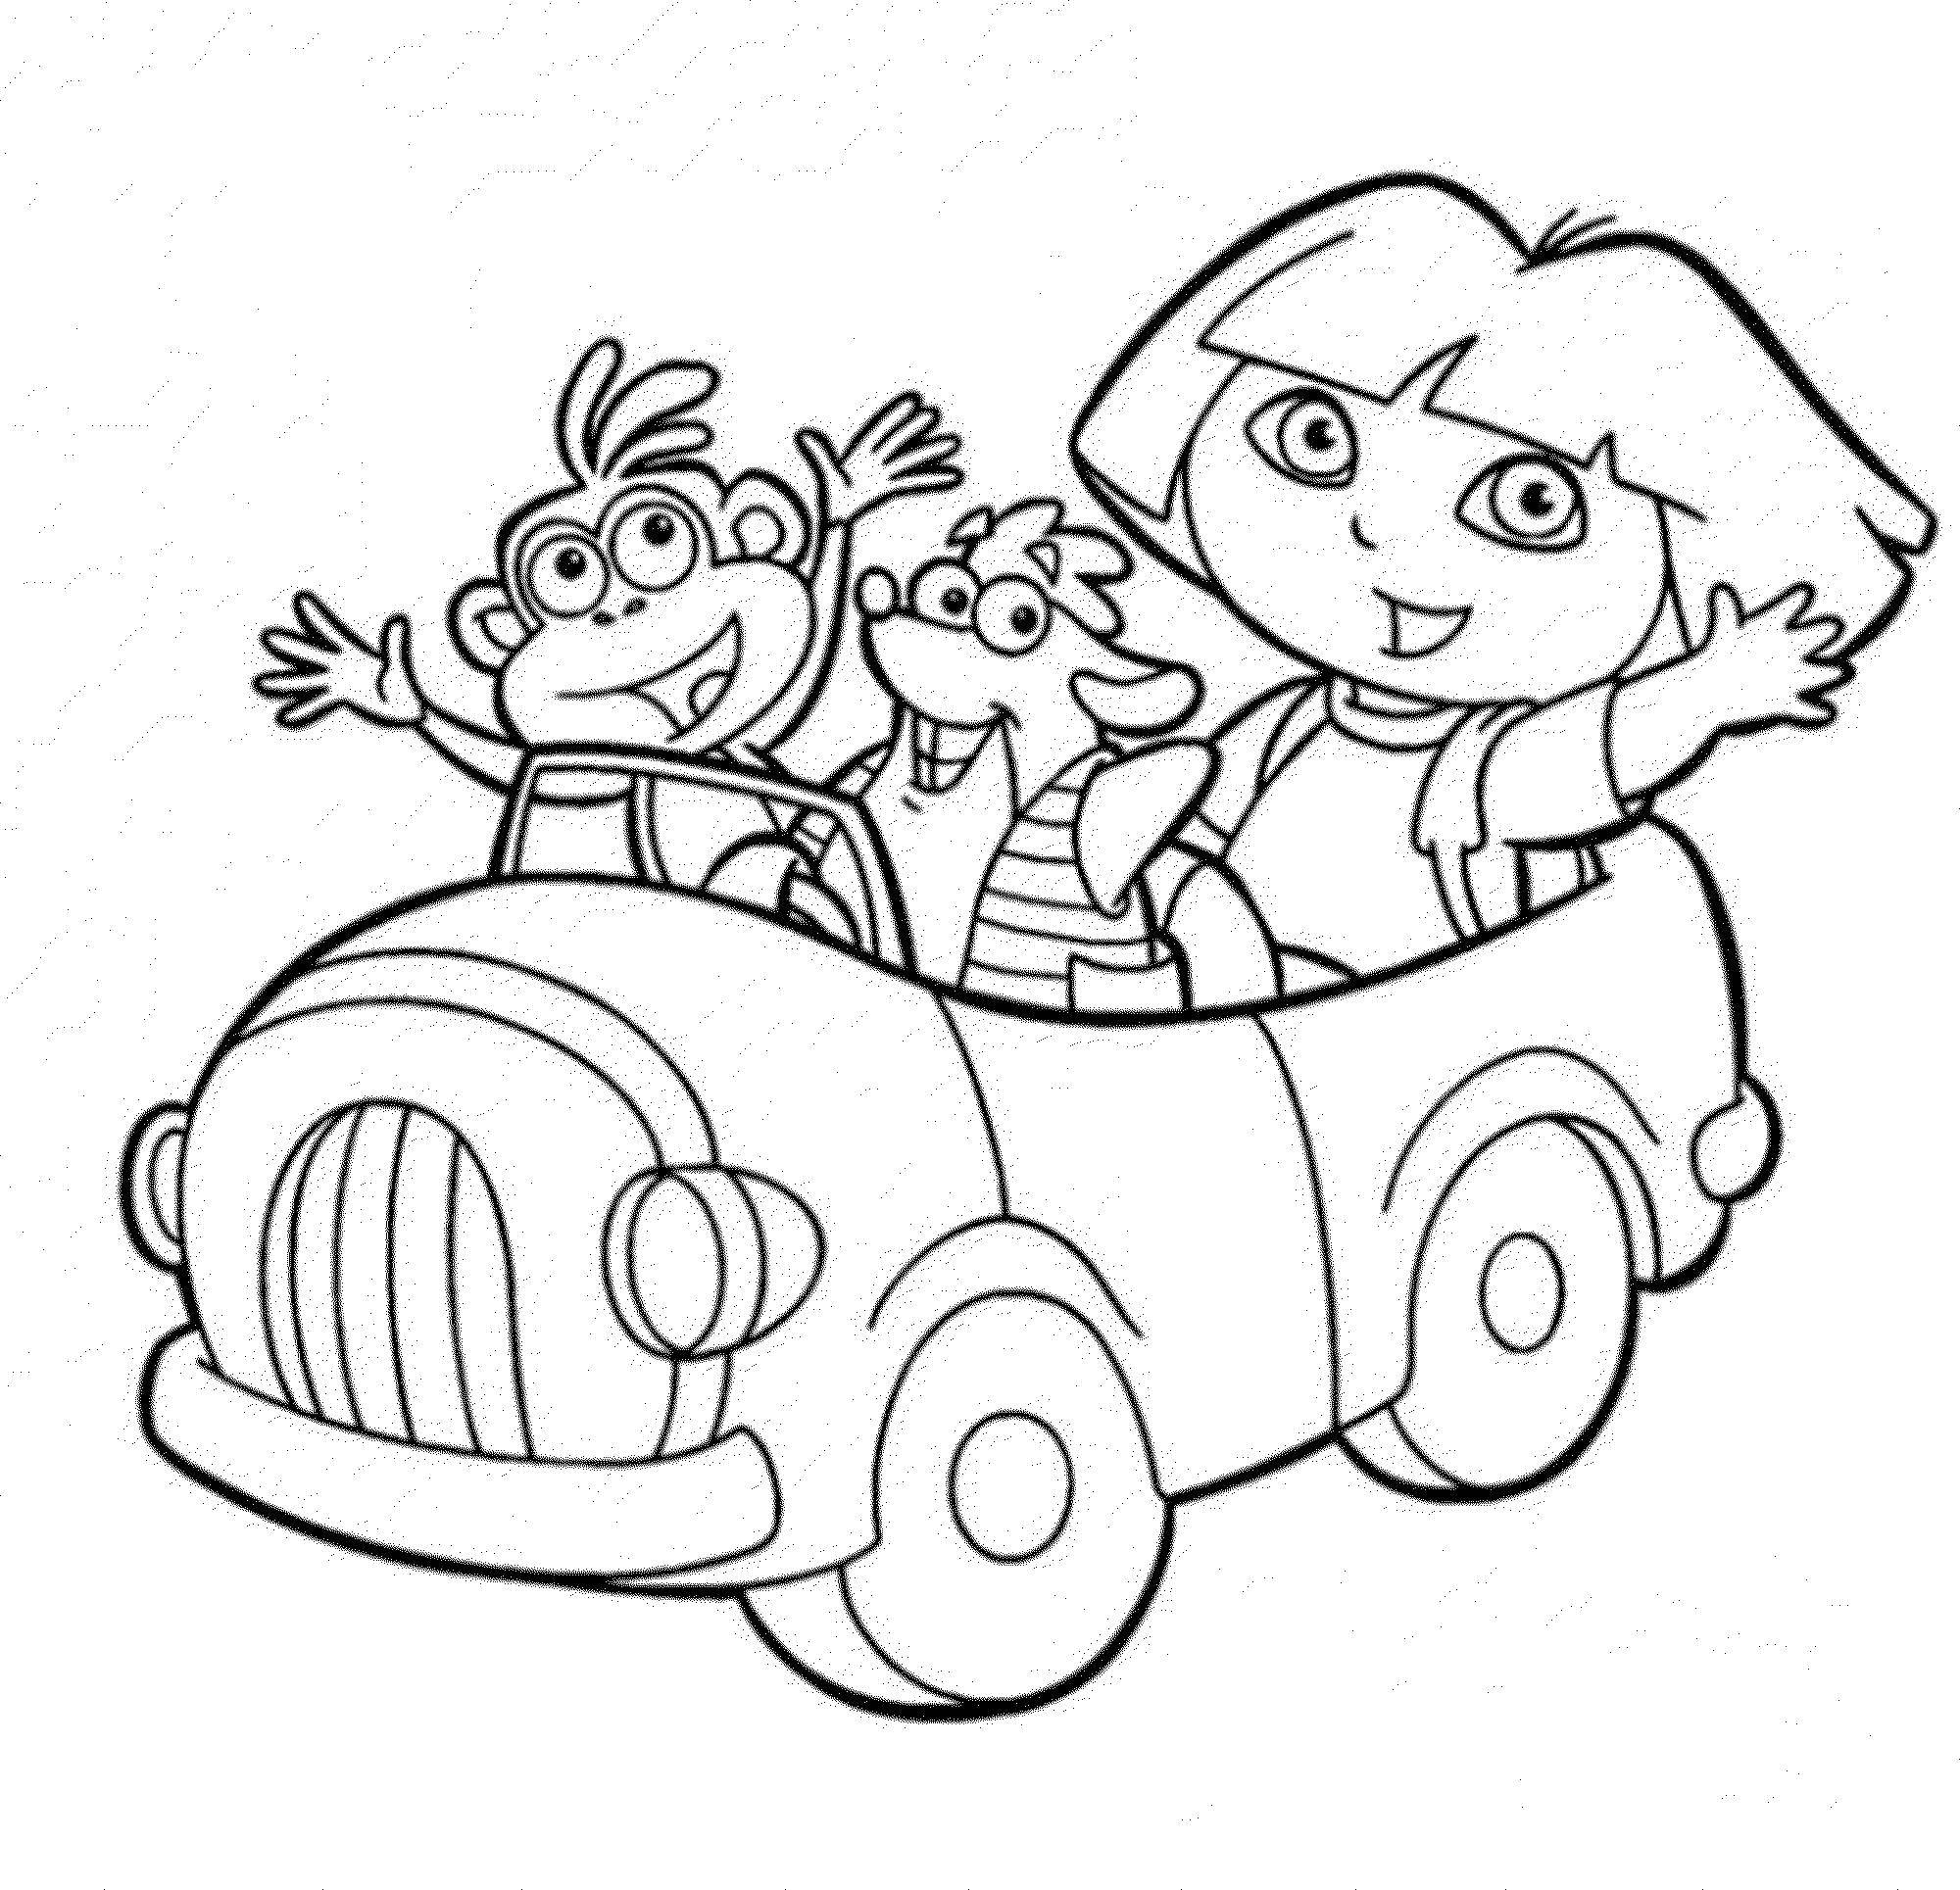 Название: Раскраска Даша едит на машине с друзьями. Категория: Дора. Теги: даша, путешественница, башмачок.